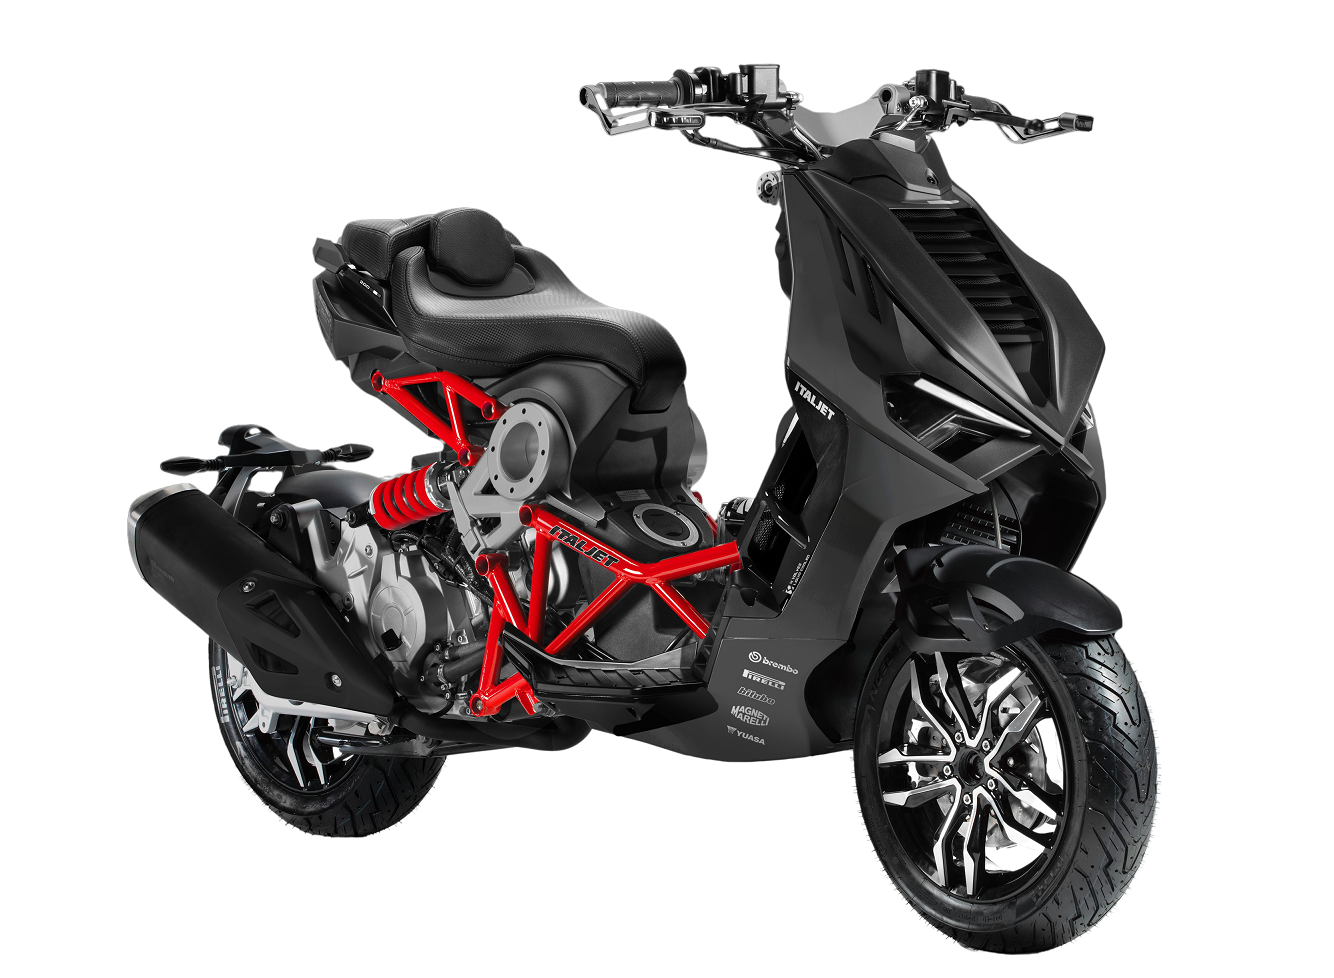 Voorkeursbehandeling buitenaards wezen Bakkerij Italjet Dragster 200cc motorscooter?? Bekijk hem nu!